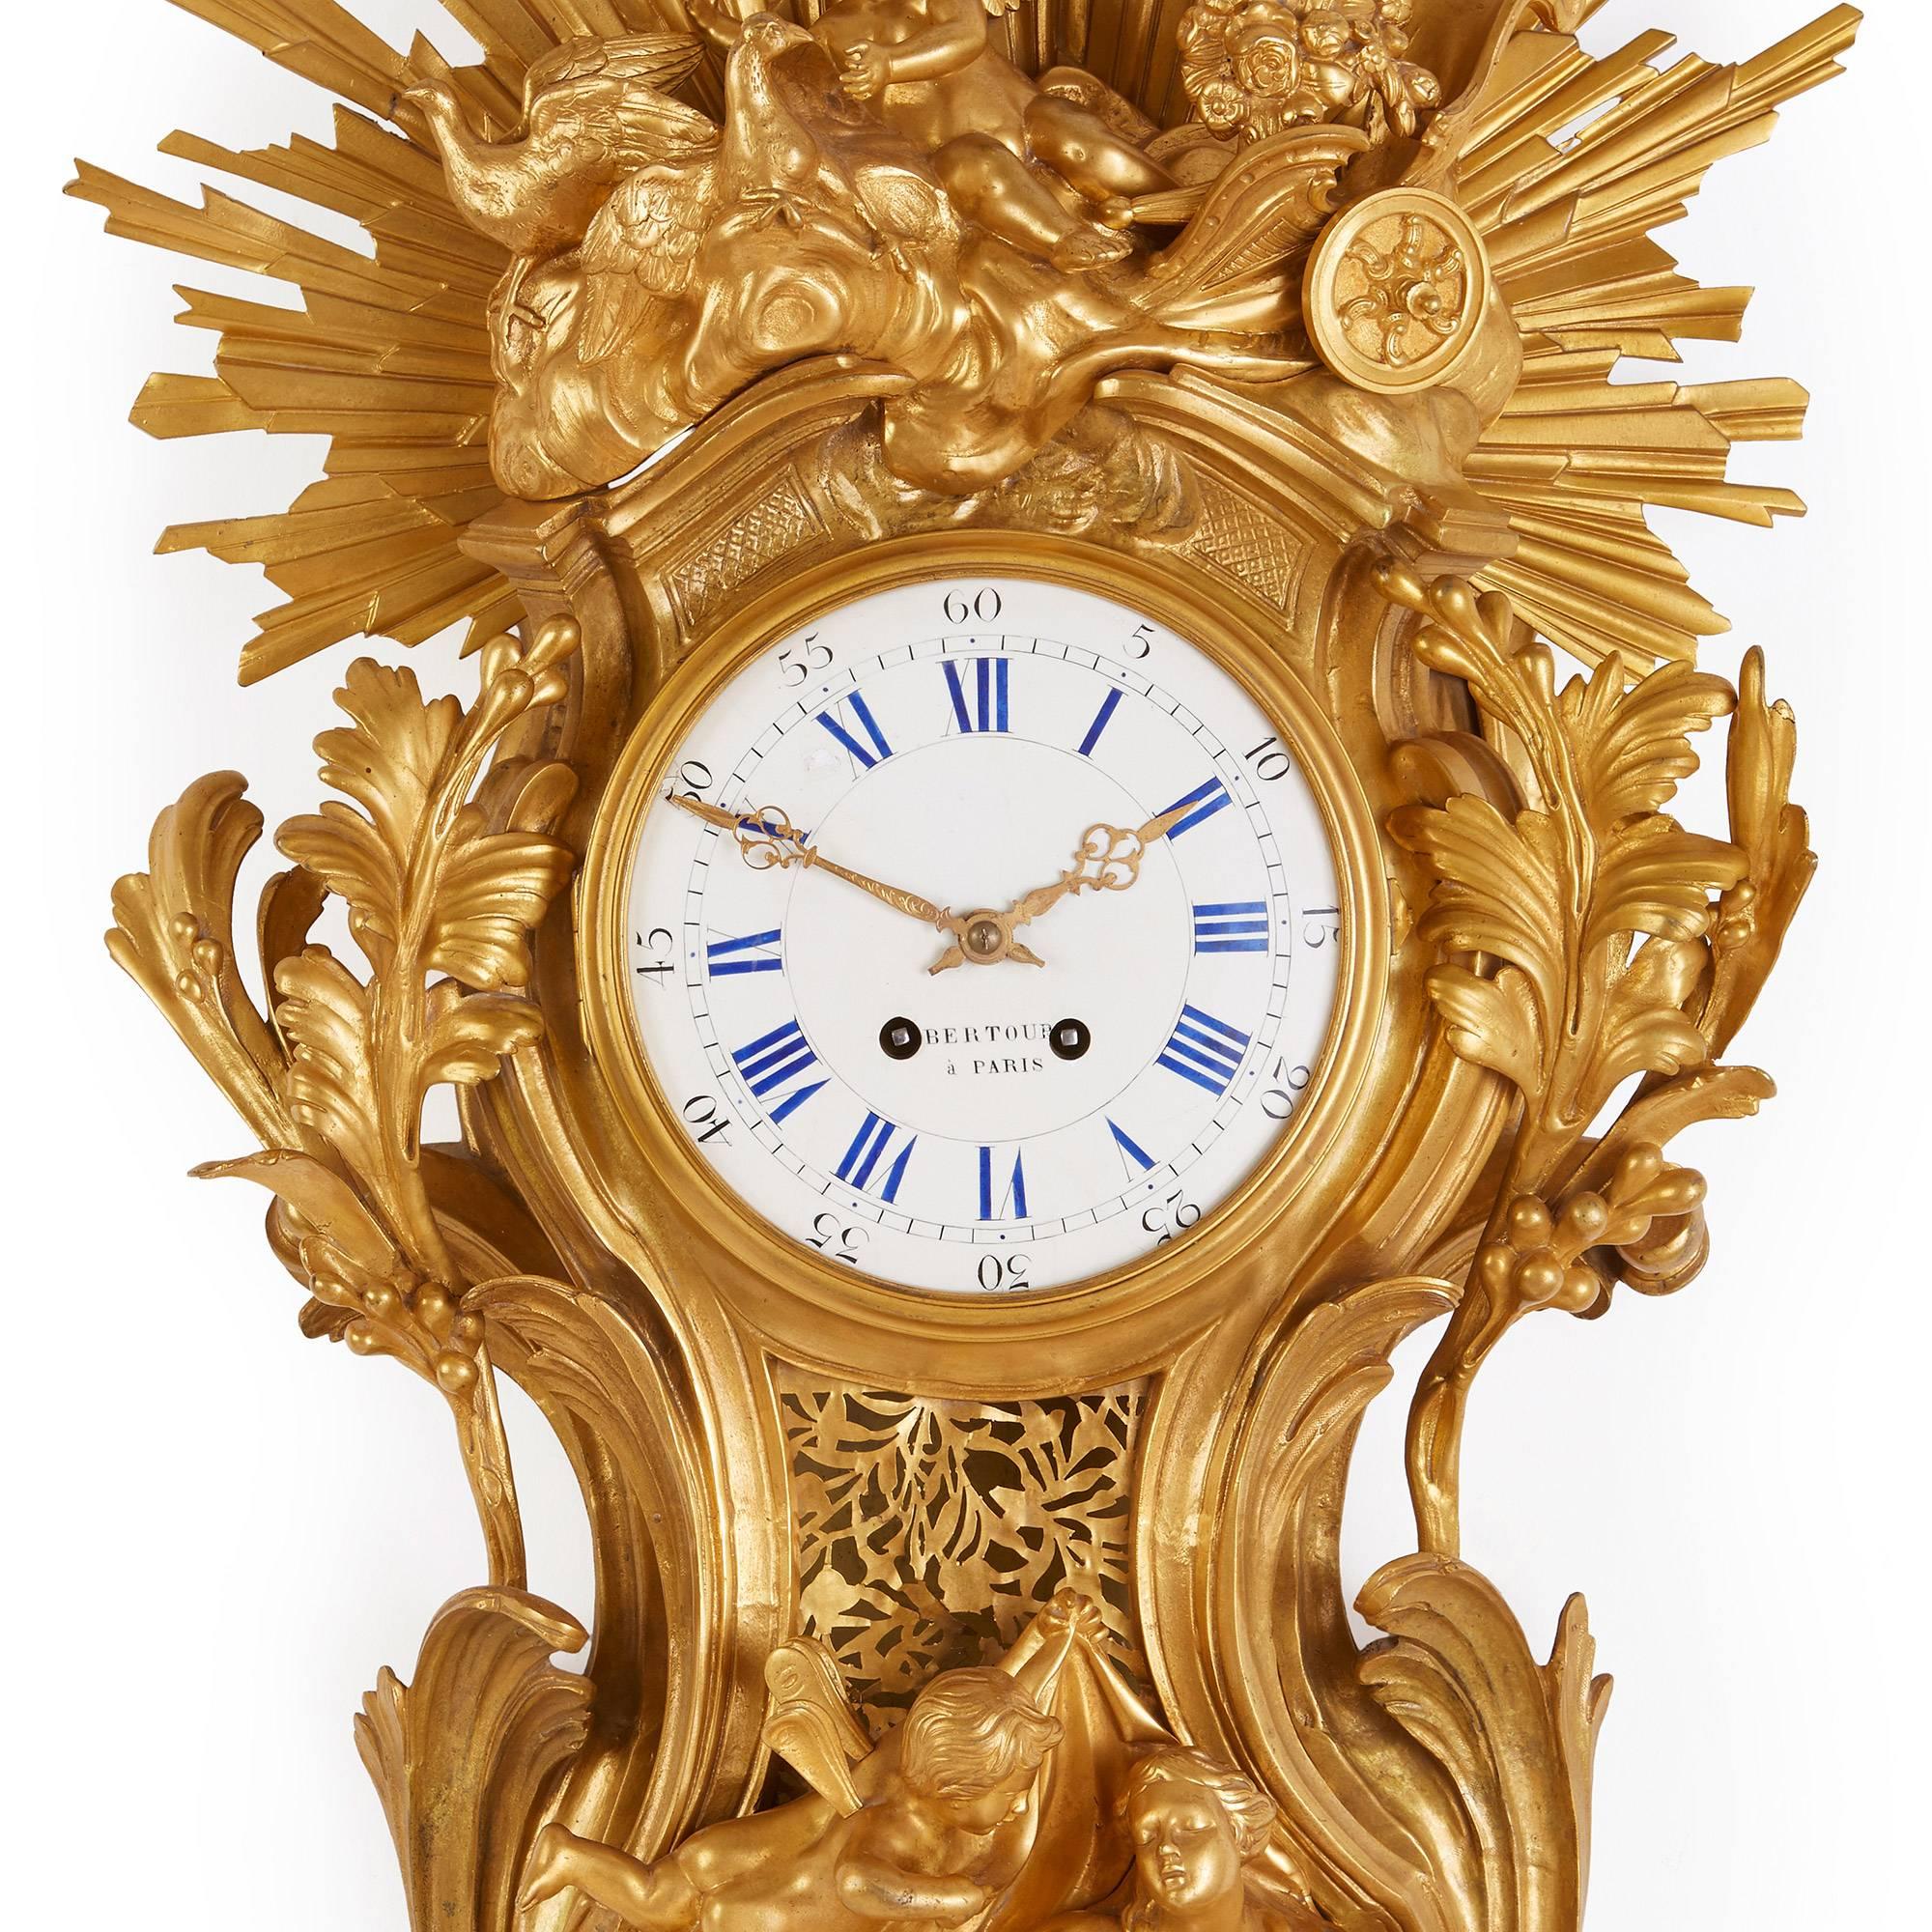 Cette belle horloge Cartel de style Belle Époque est remarquable pour sa représentation étonnante d'un rayon de soleil, qui est représenté en bronze doré vif. Le cadran central circulaire en émail est serti dans un boîtier en bronze doré très